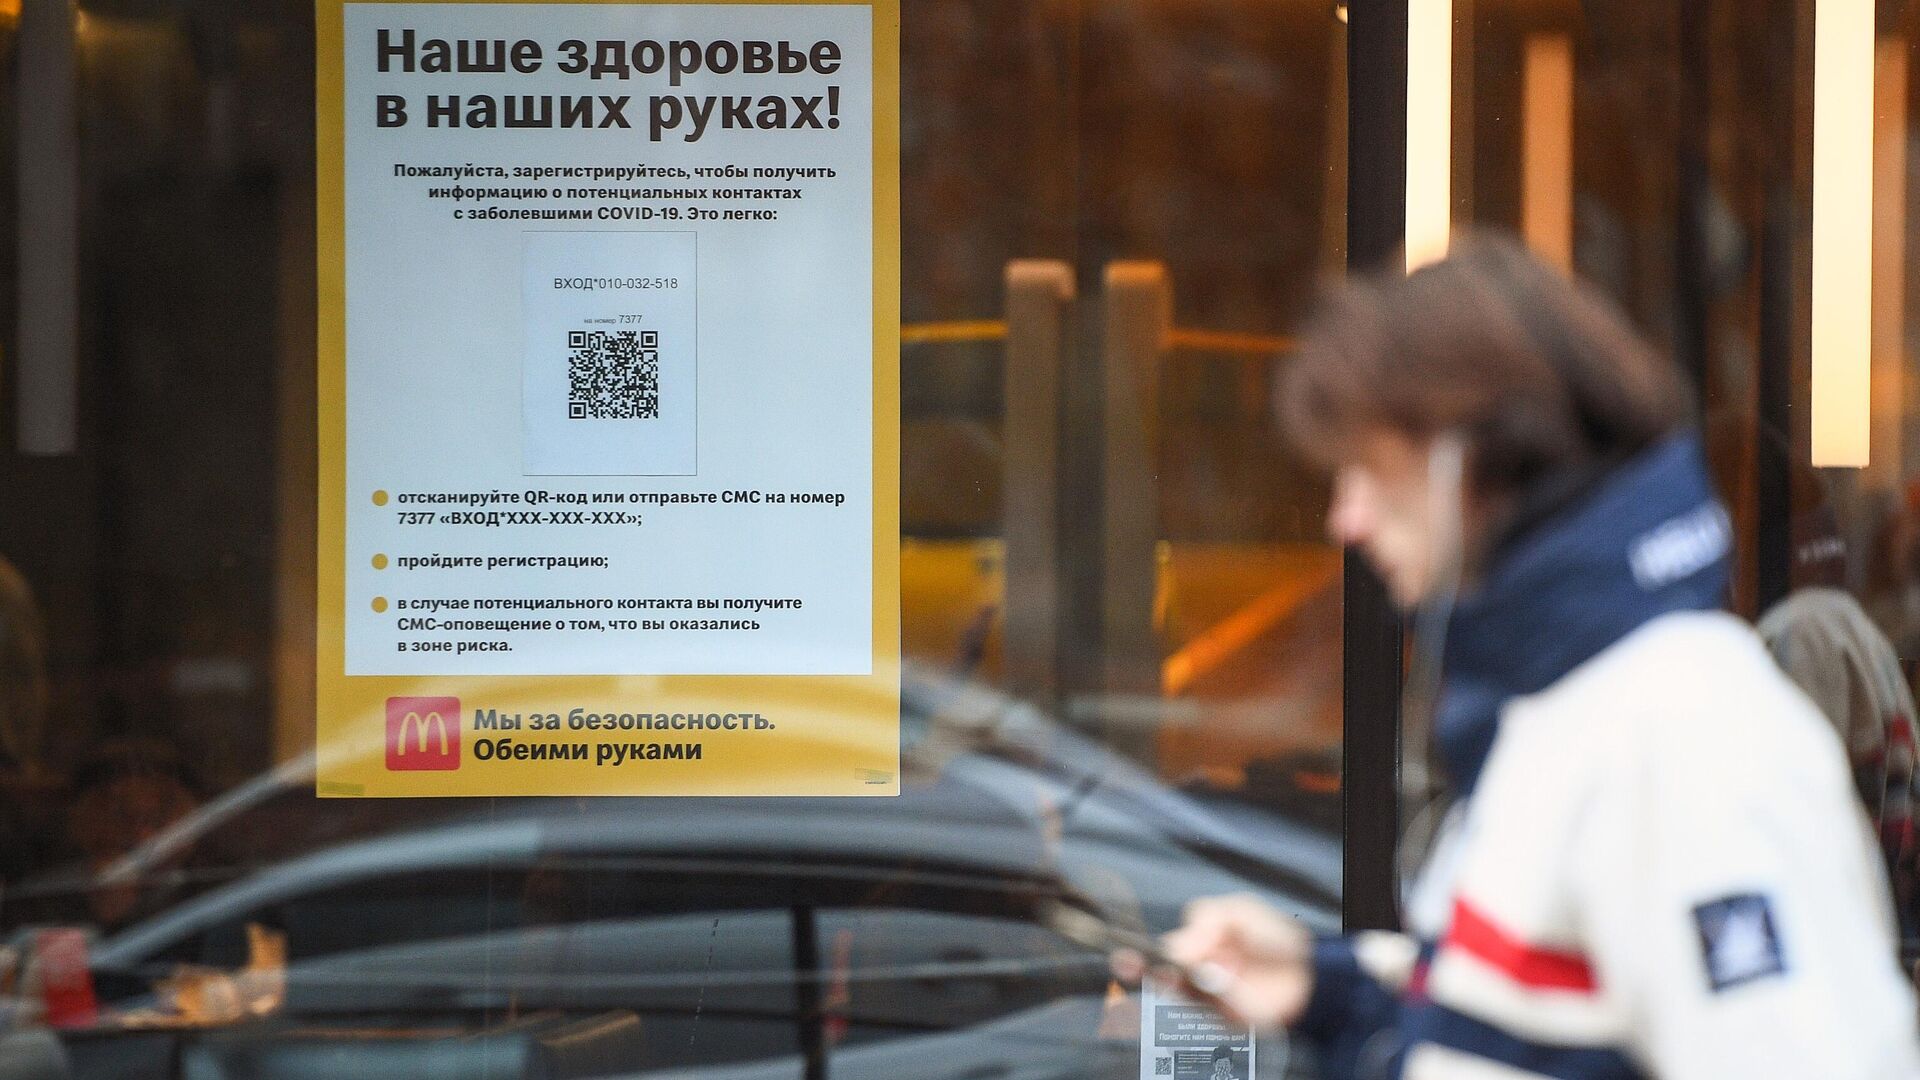 Информационная реклама о программе регистрации посетителей по QR-кодам и SMS в сети ресторанов McDonald's в Москве - РИА Новости, 1920, 30.11.2020